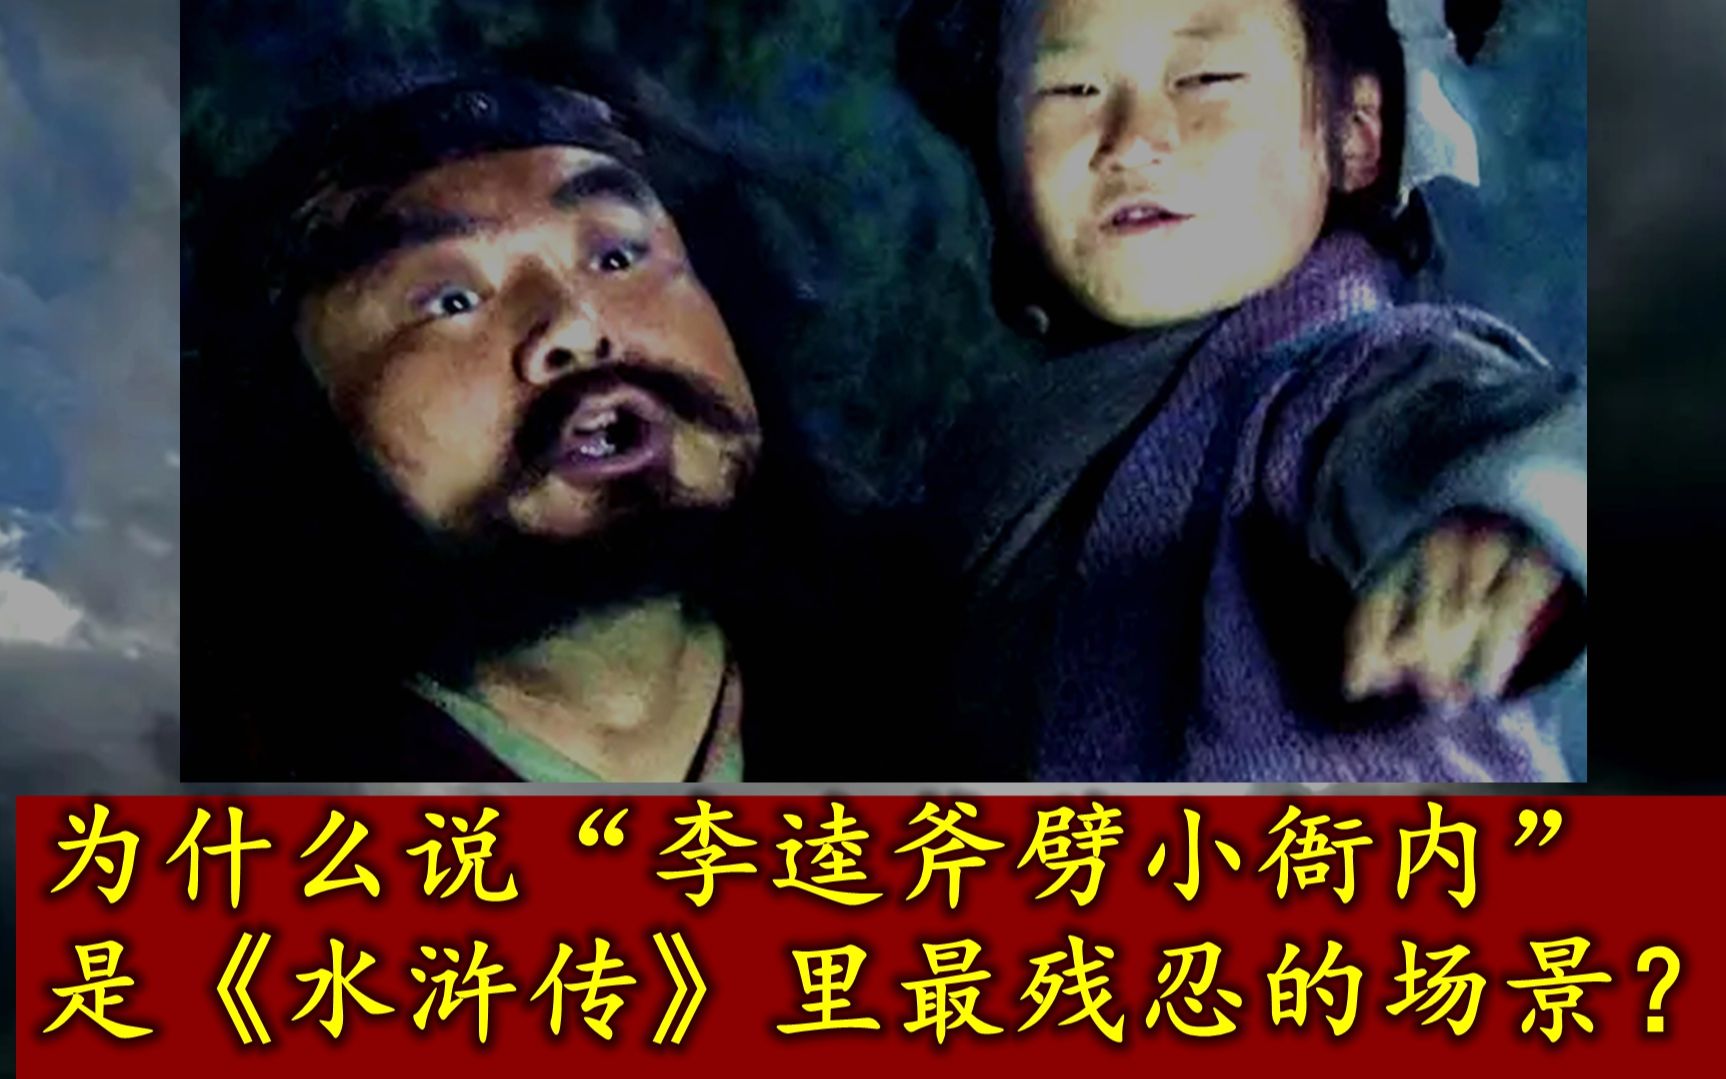 为什么说“李逵斧劈小衙内”是《水浒传》里最残忍的场景？